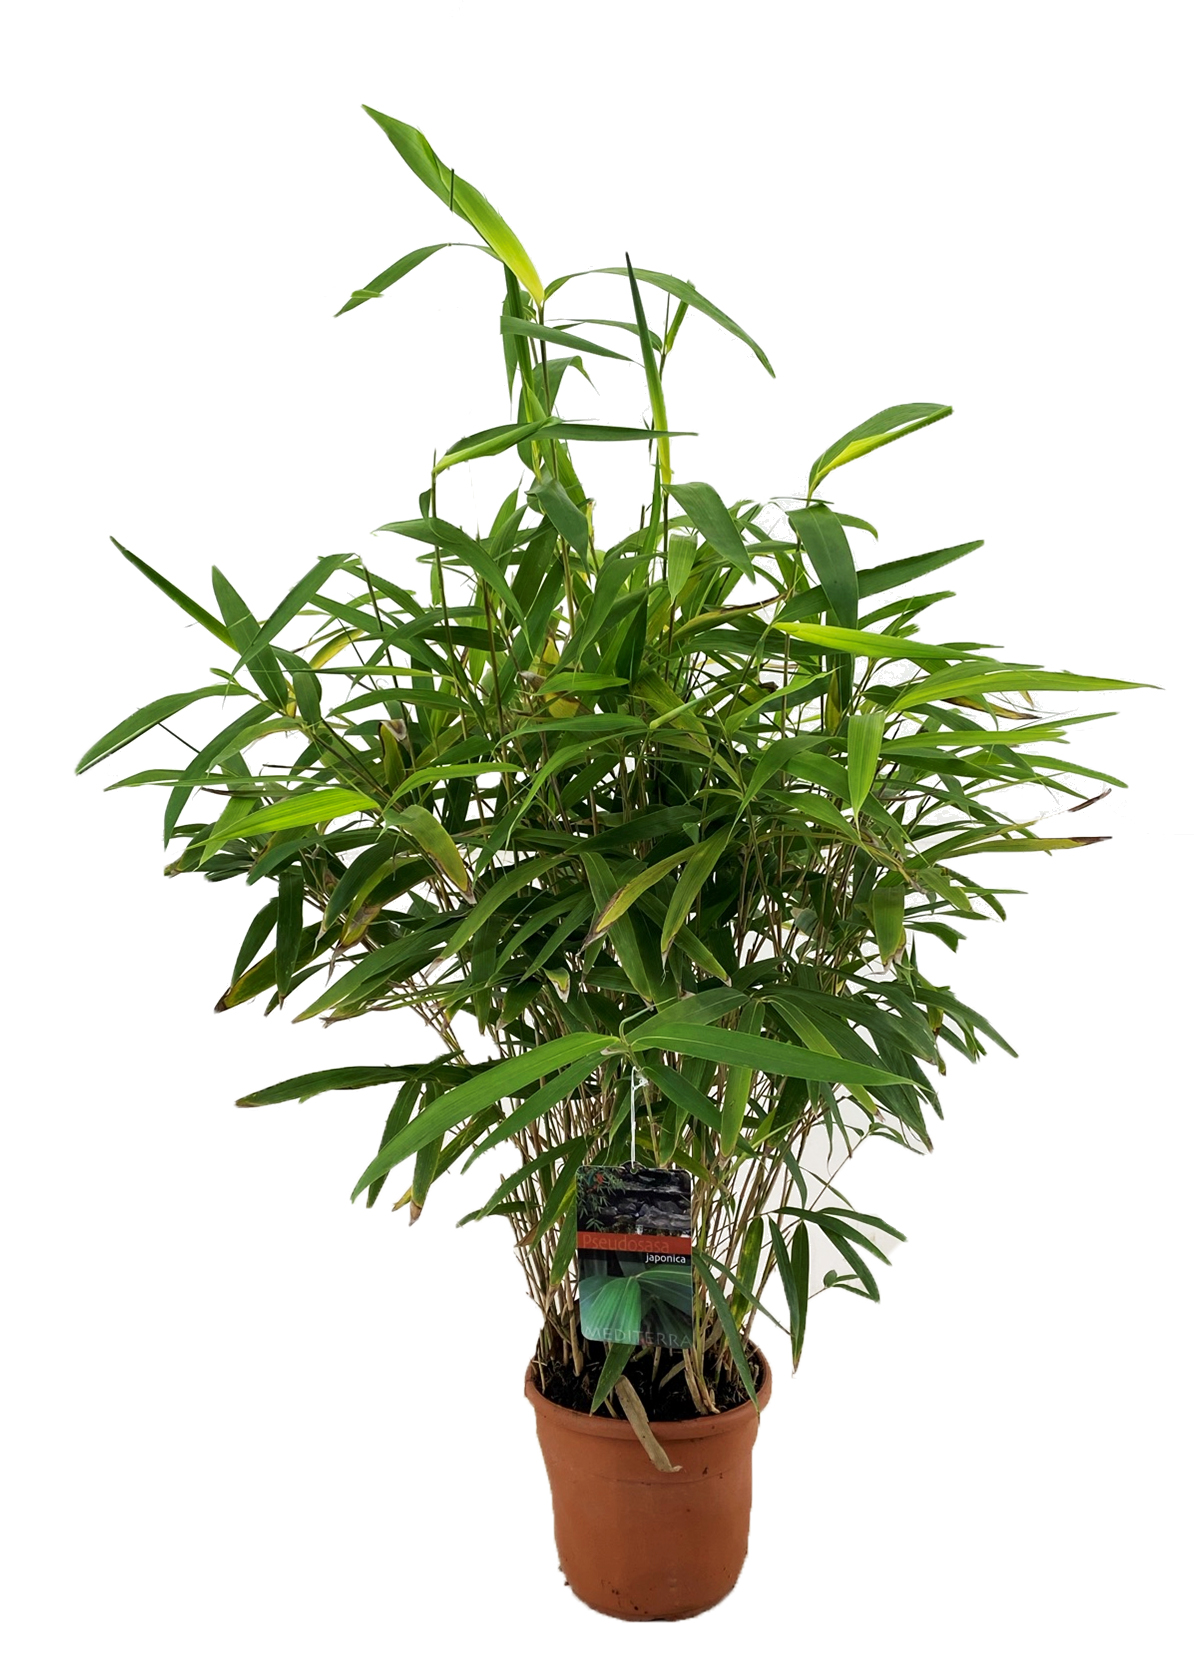 Bambù Metake - Bambusa Metake (Pseudosasa japonica)